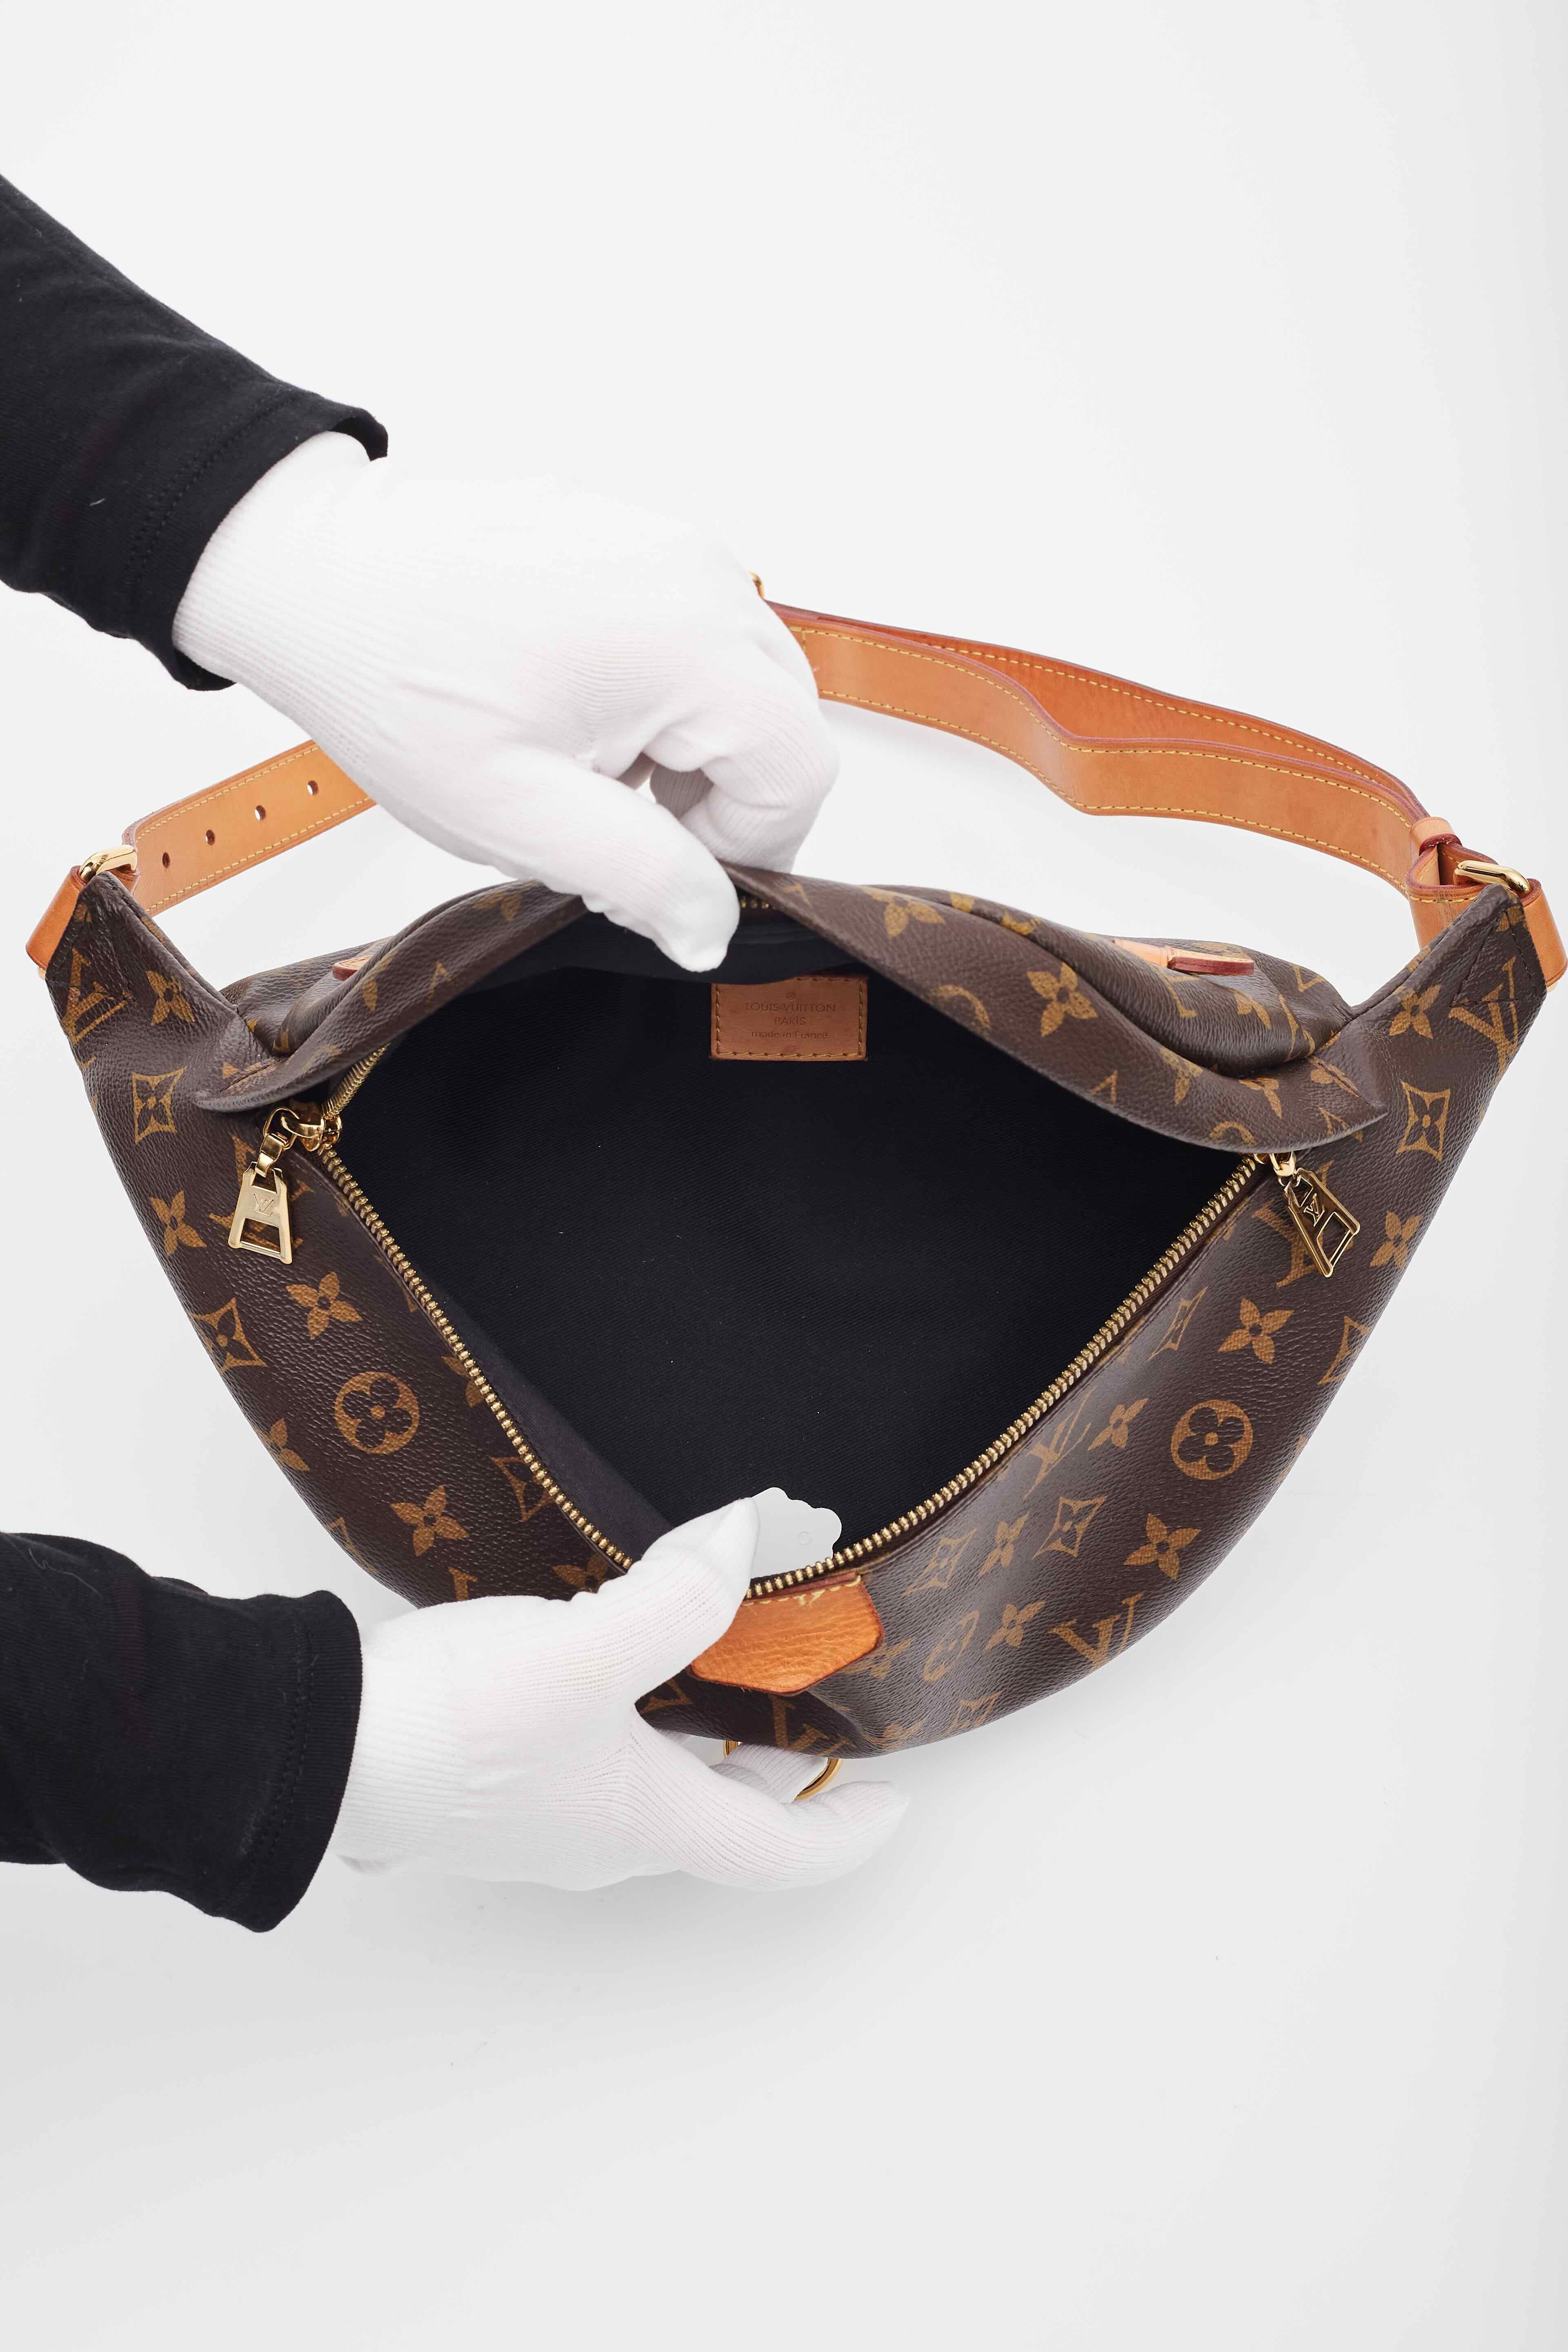 Louis Vuitton Monogram Canvas Bum Bag 2018 For Sale 2